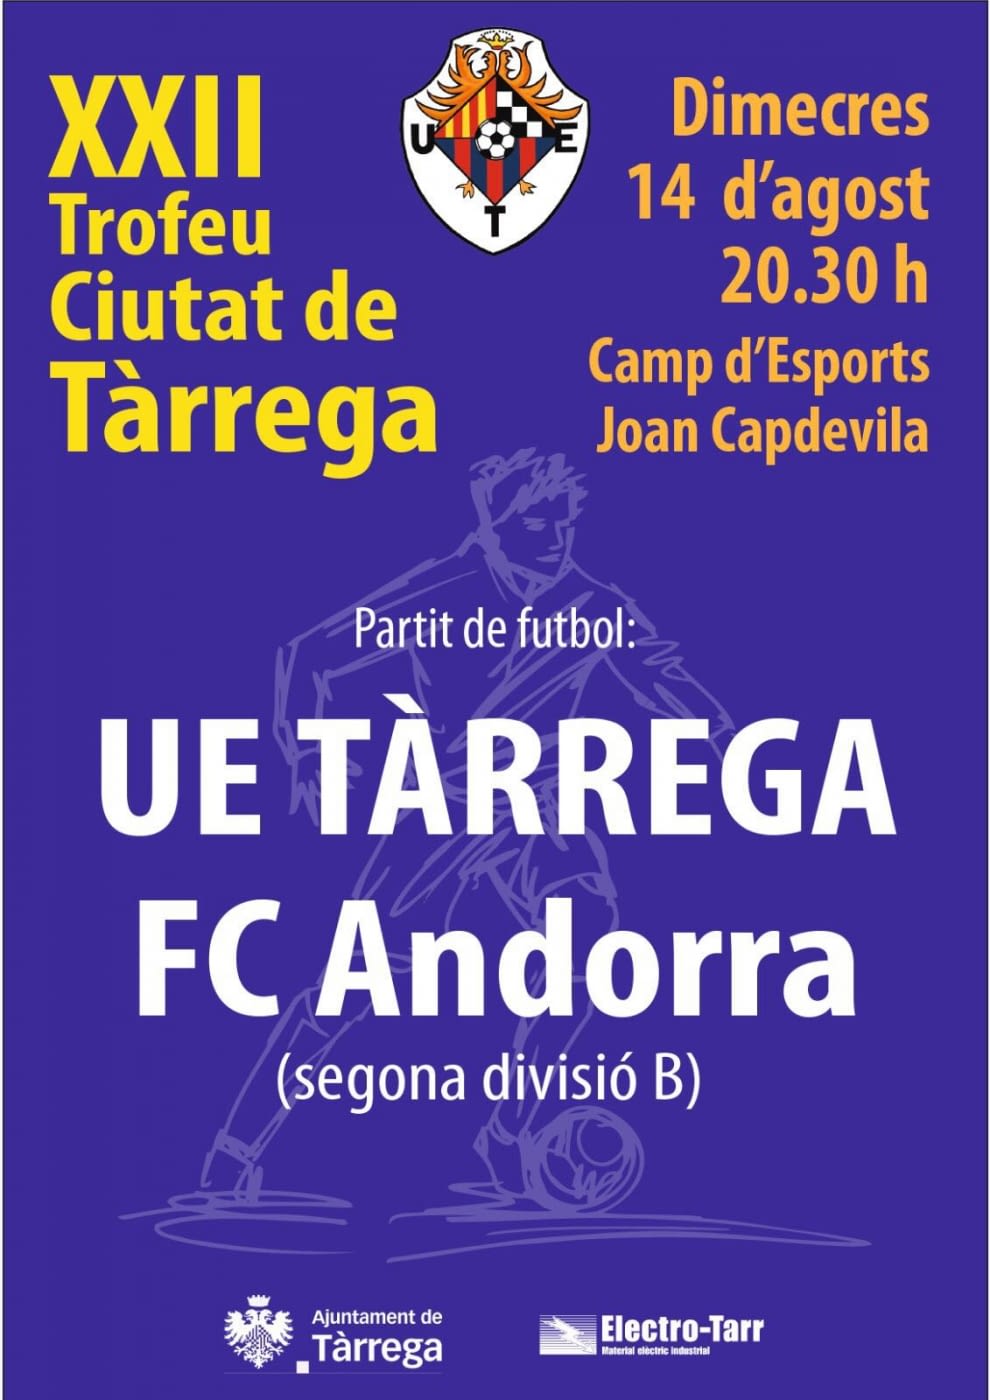 El FC Andorra, convidat de luxe al 22è Trofeu Ciutat de Tàrrega el dimecres 14 d’agost